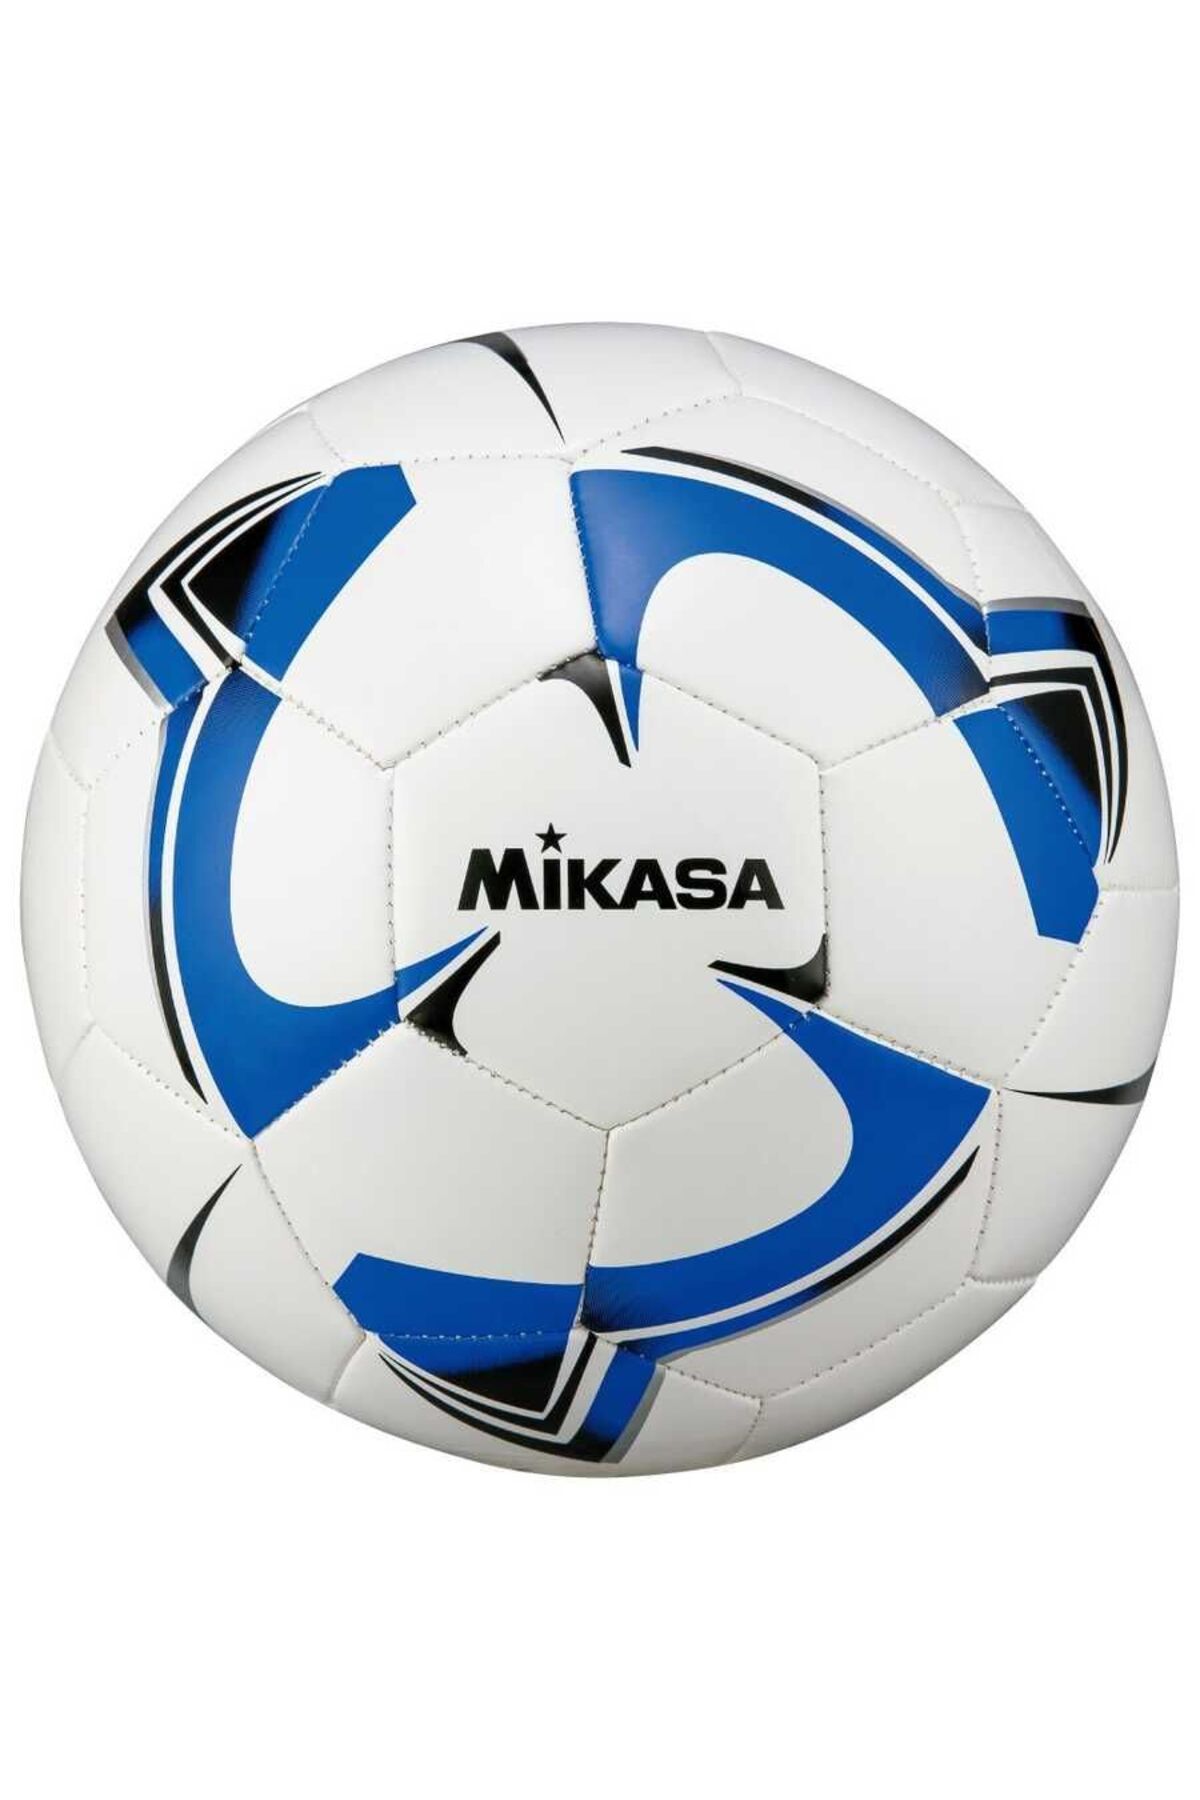 MIKASA F5tpv-w-blbk Sentetik Deri Futbol Topu